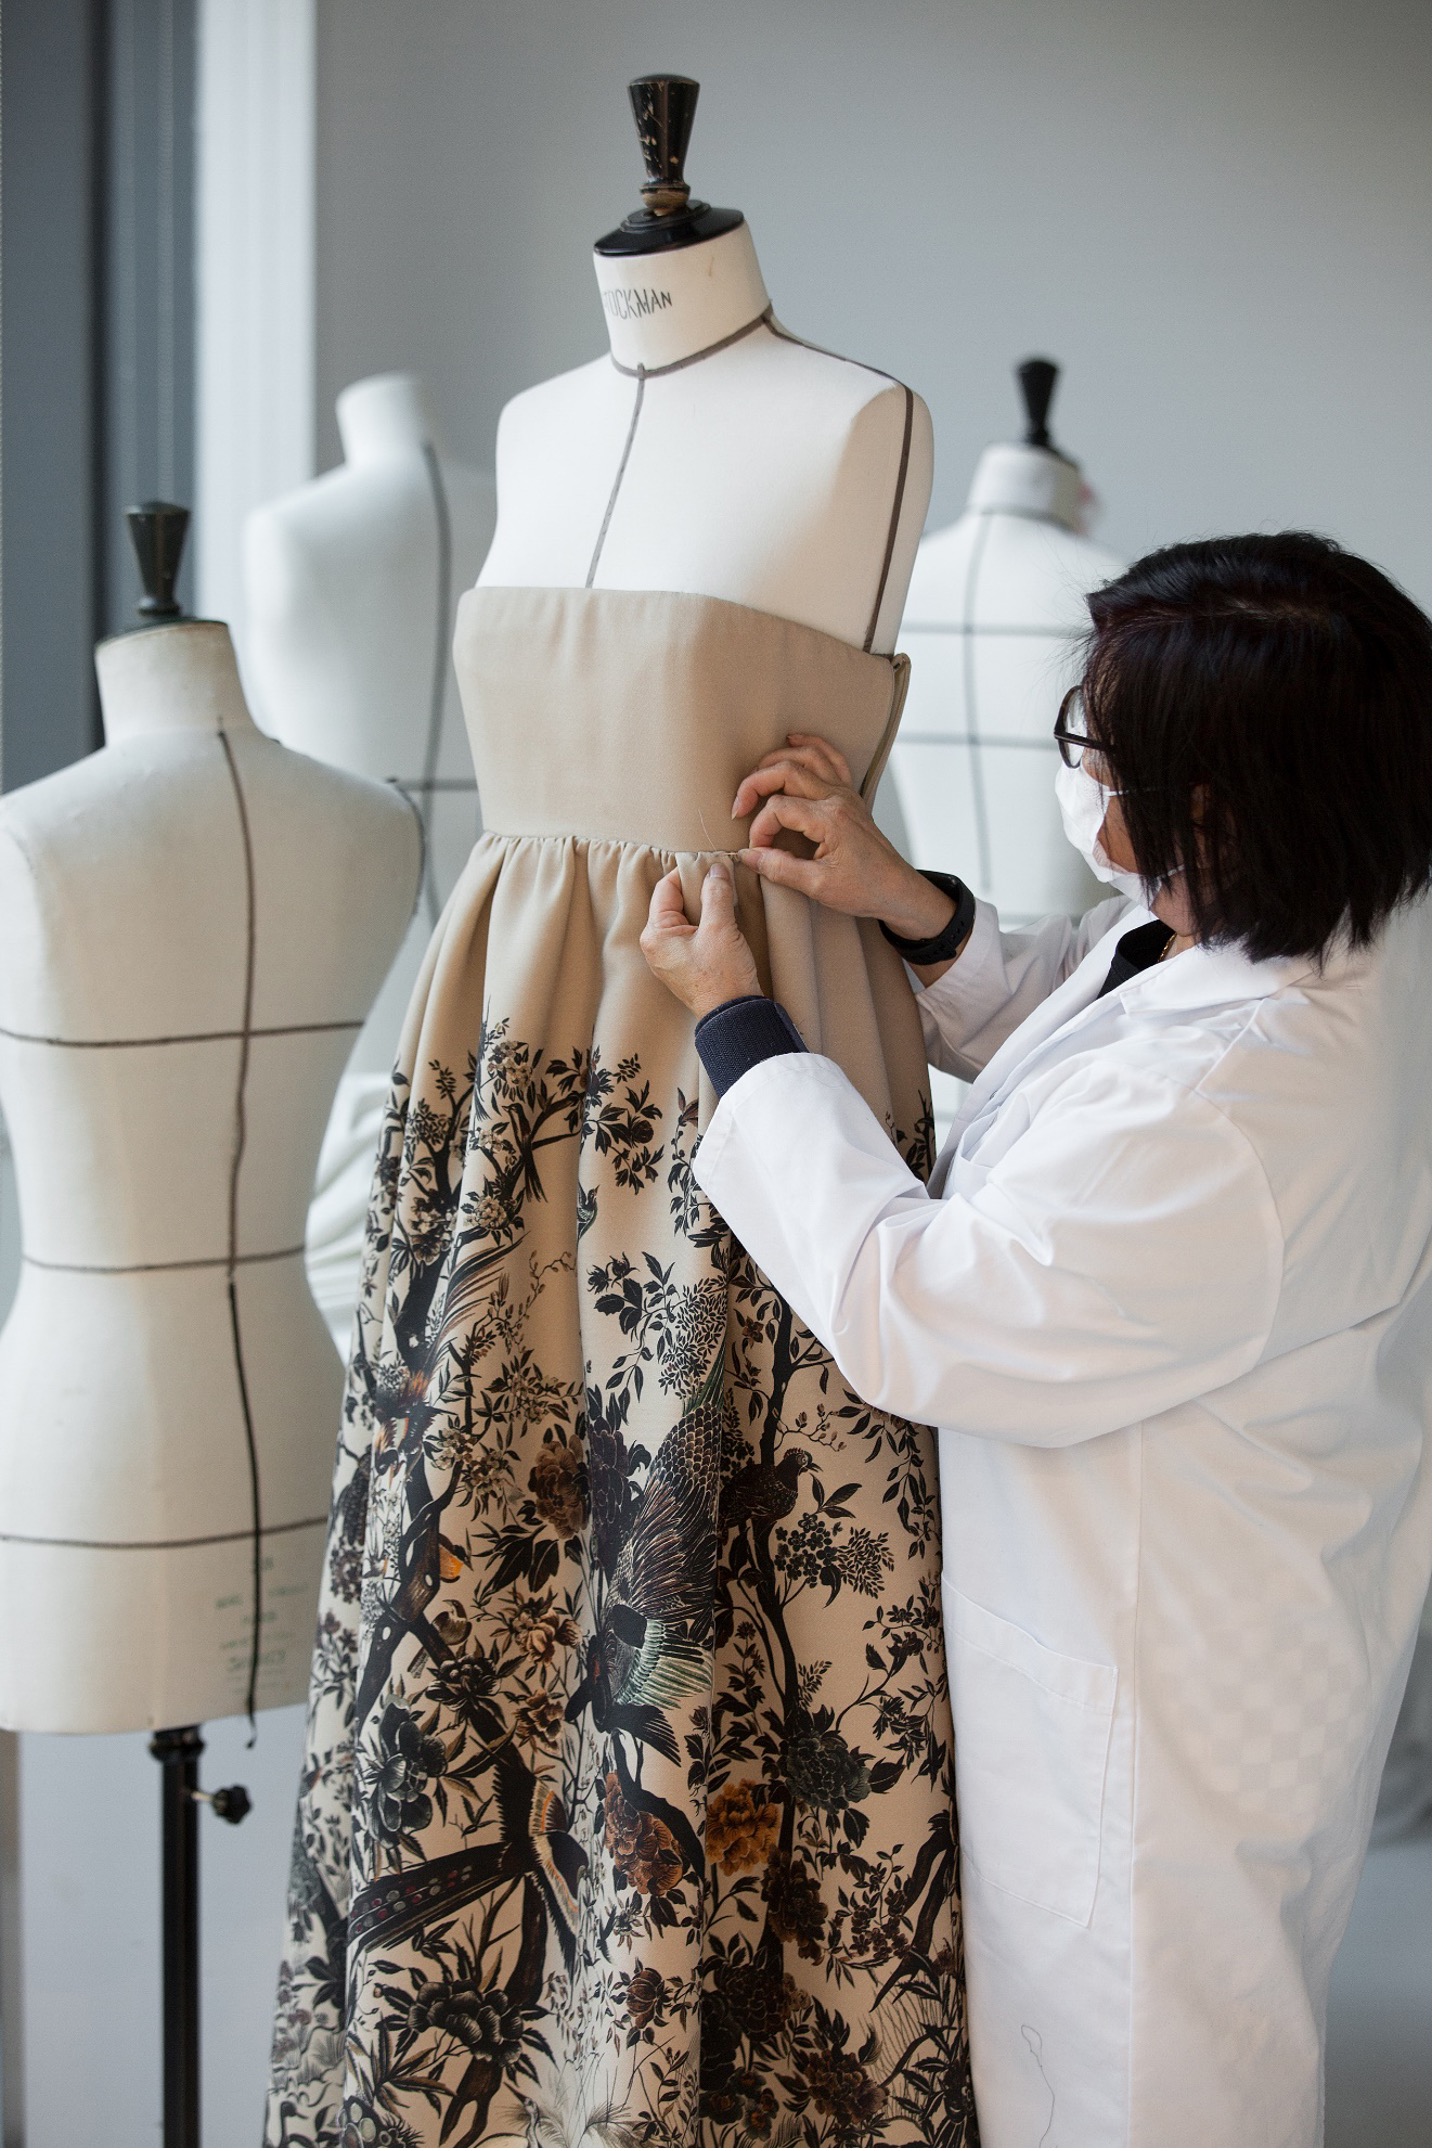 迪奥二零二二秋冬成衣系列之工艺 工坊匠人在制作“冬日花园”主题的礼服裙